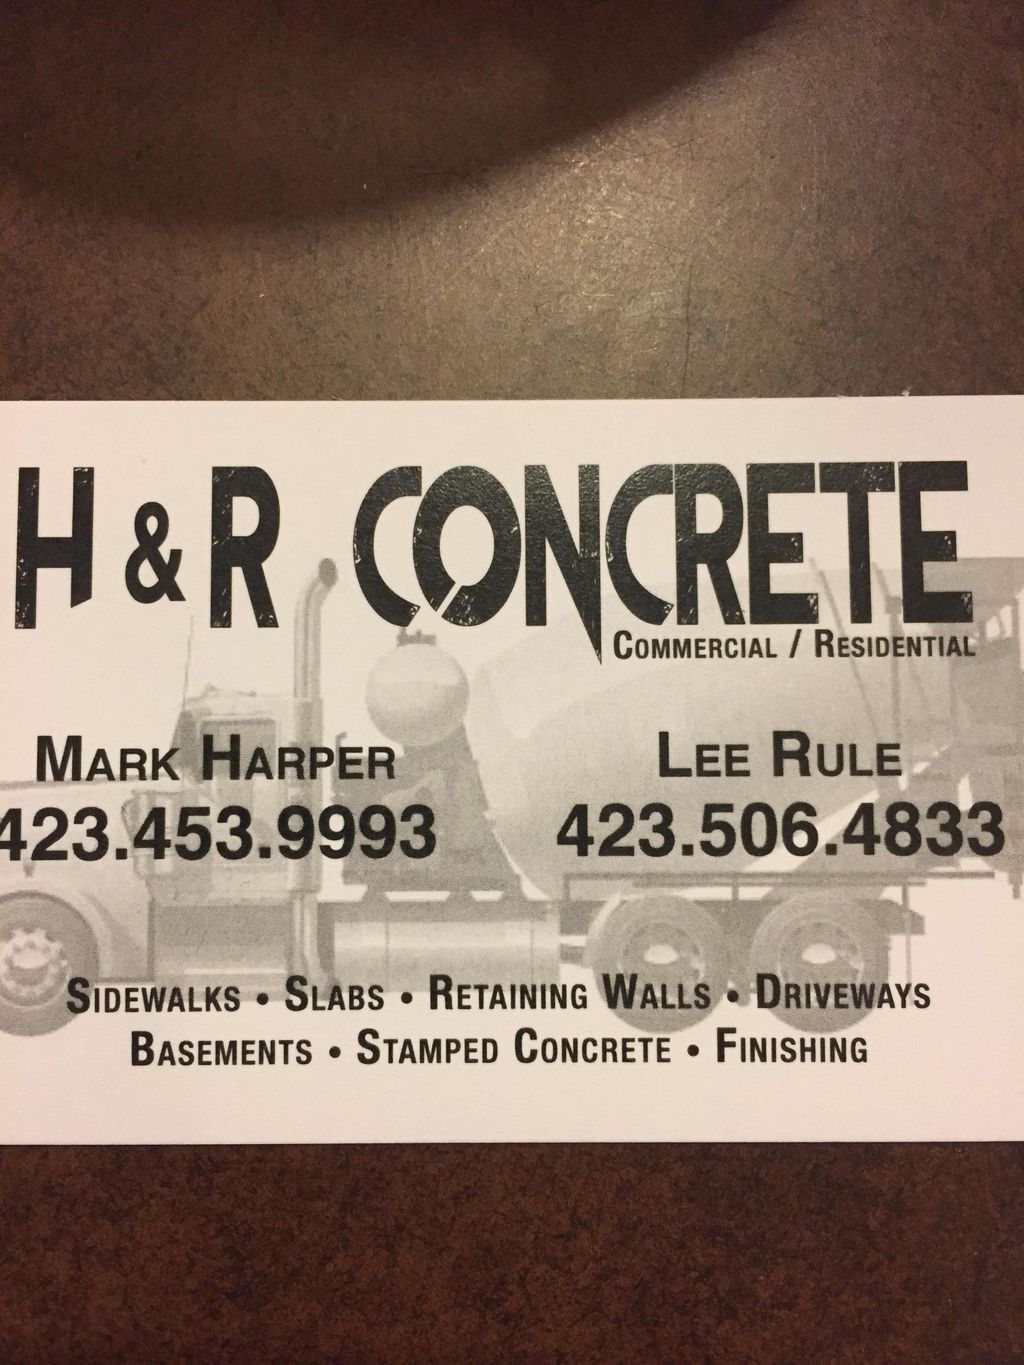 H&R CONCRETE